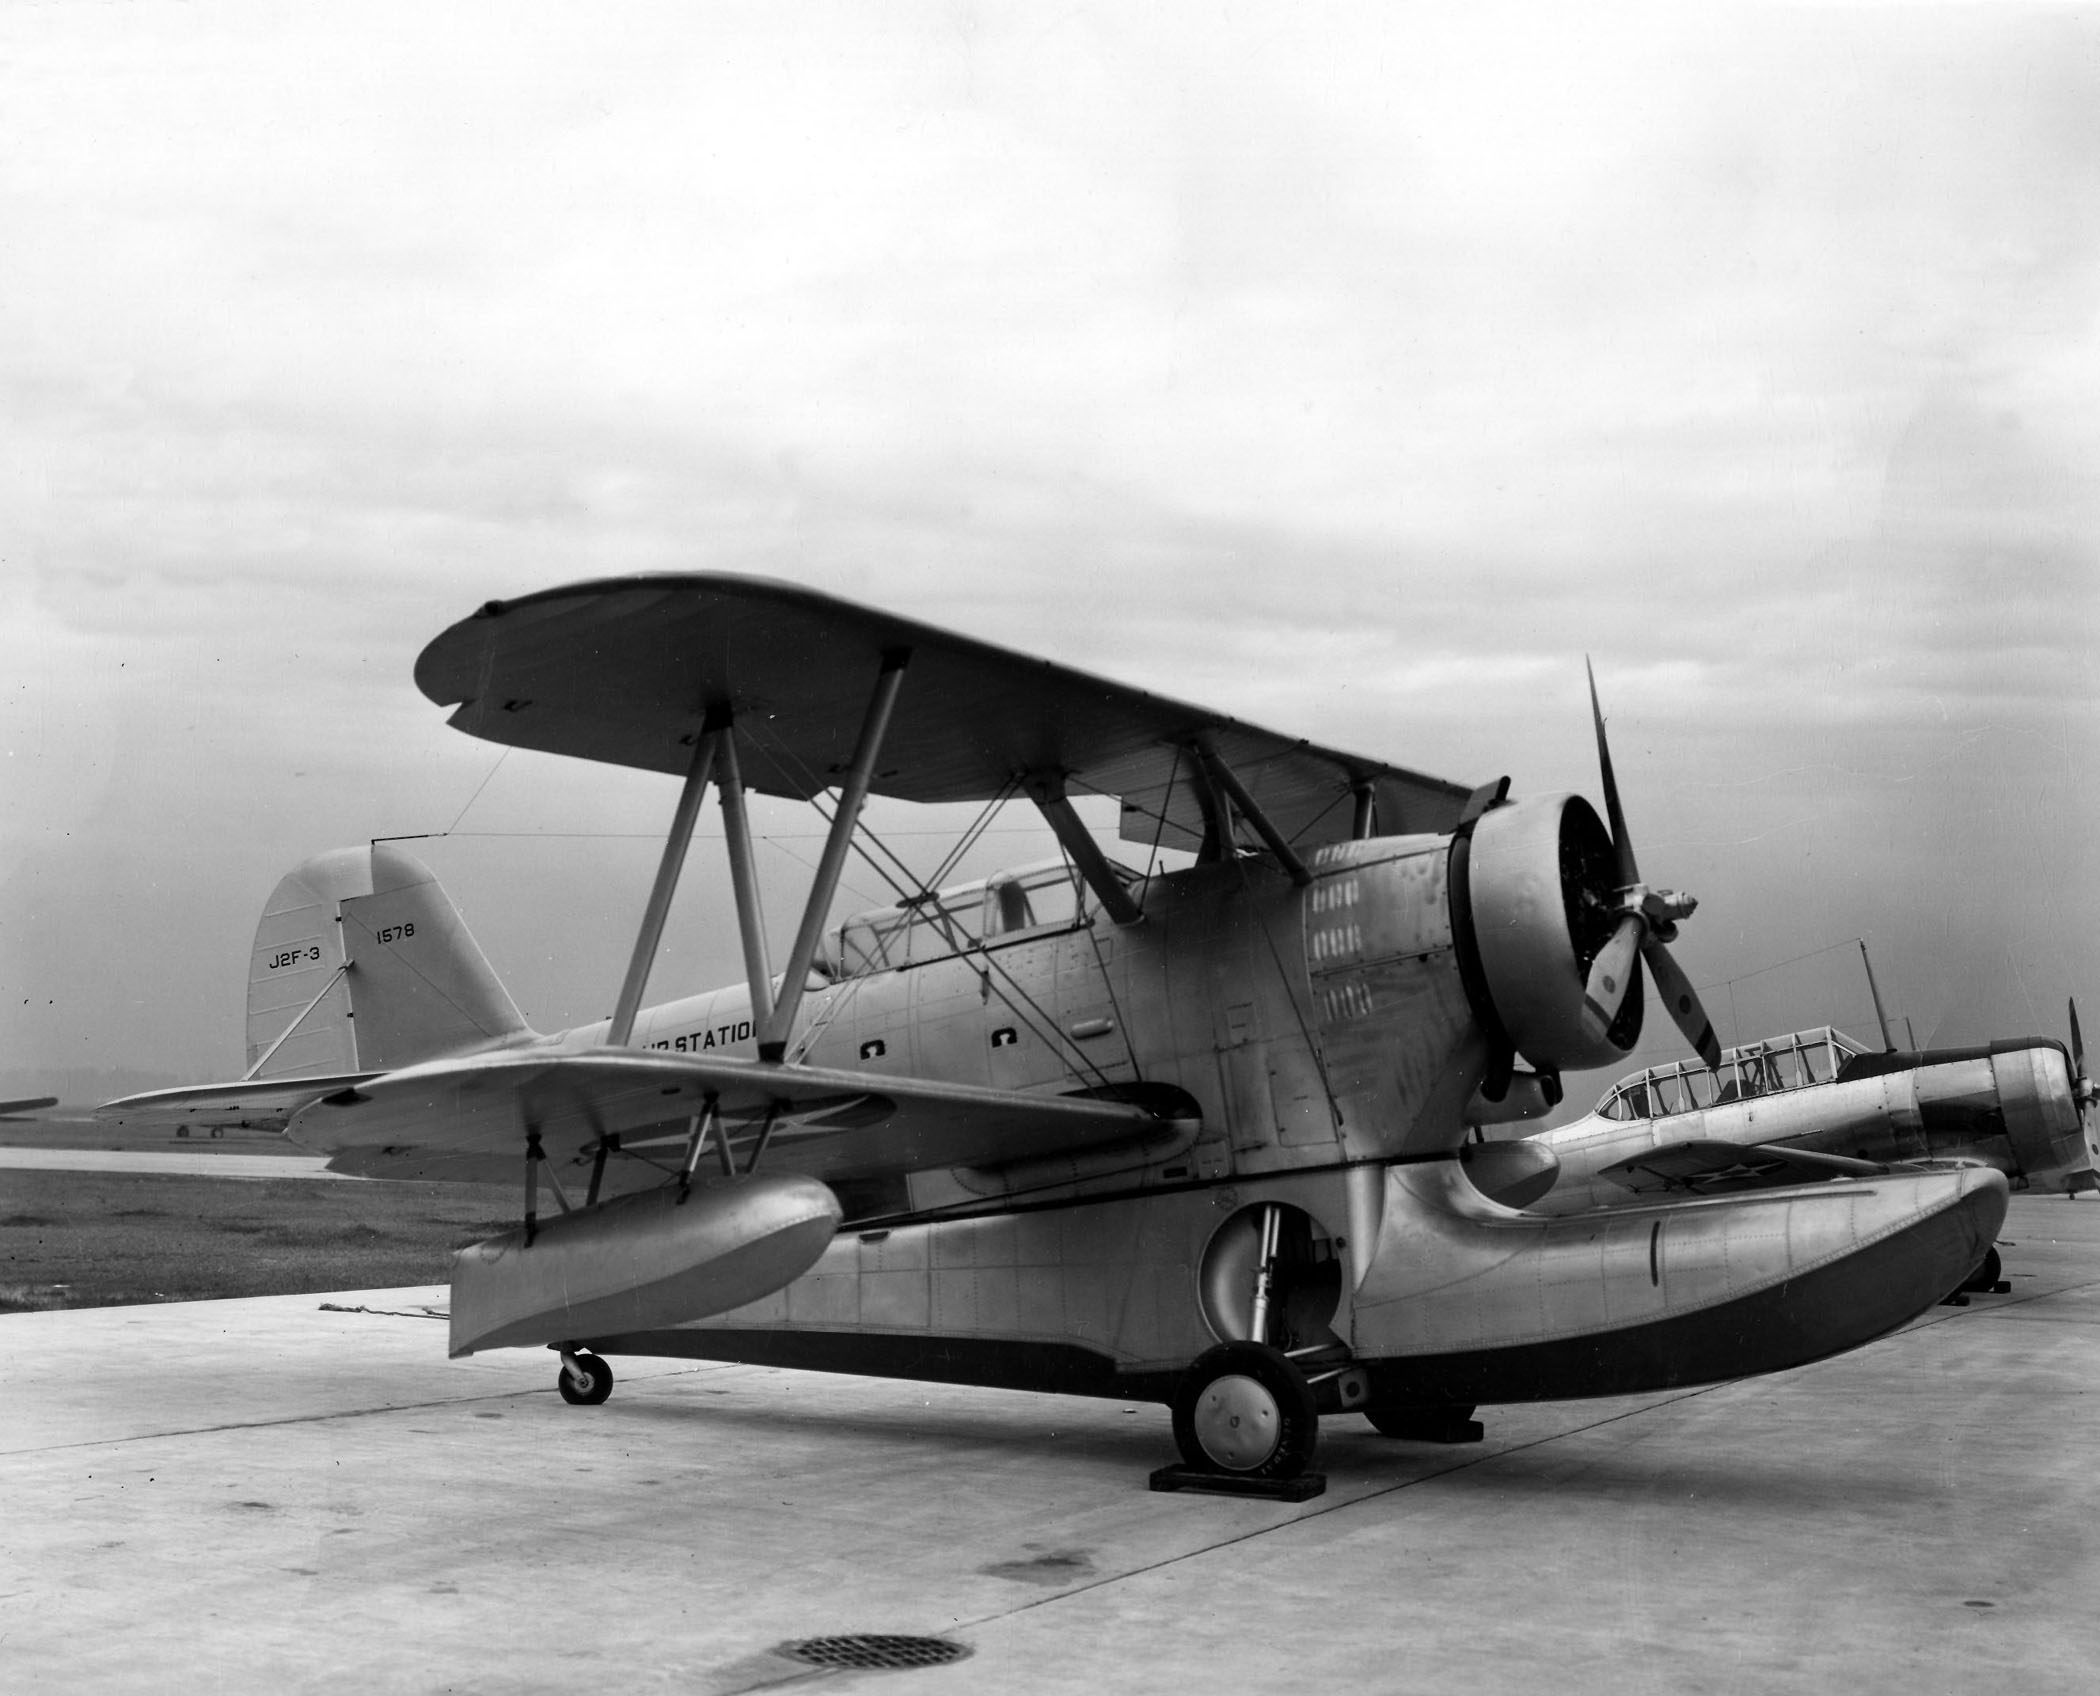 J2F-3 NAS Jax 1940-2